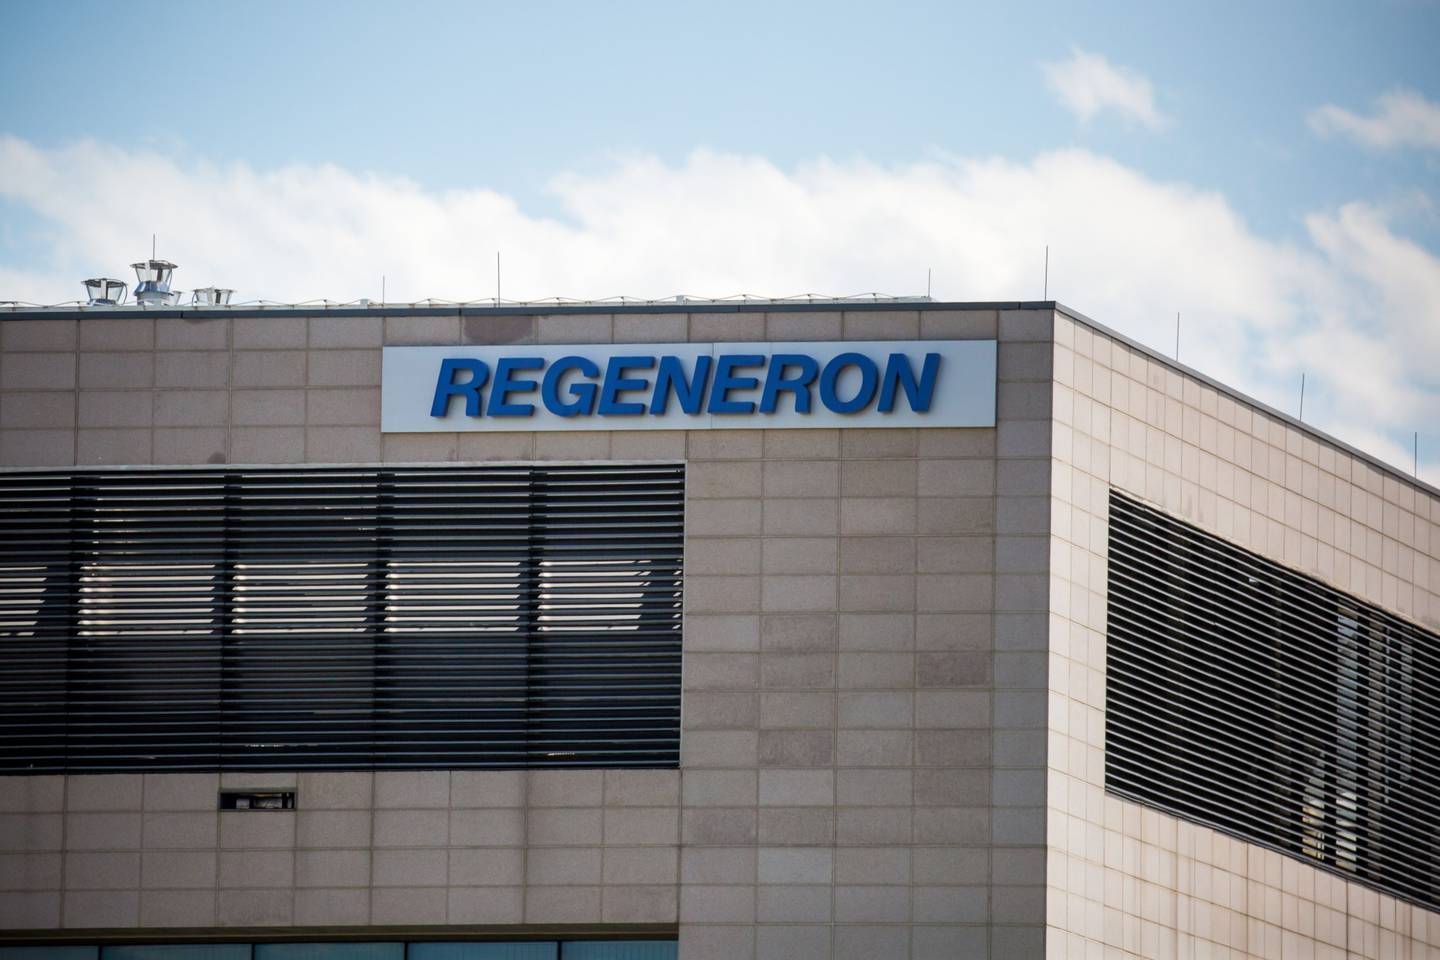 Señalización de Regeneron Pharmaceuticals Inc. afuera de su sede en Tarrytown, Nueva York, EE.UU.